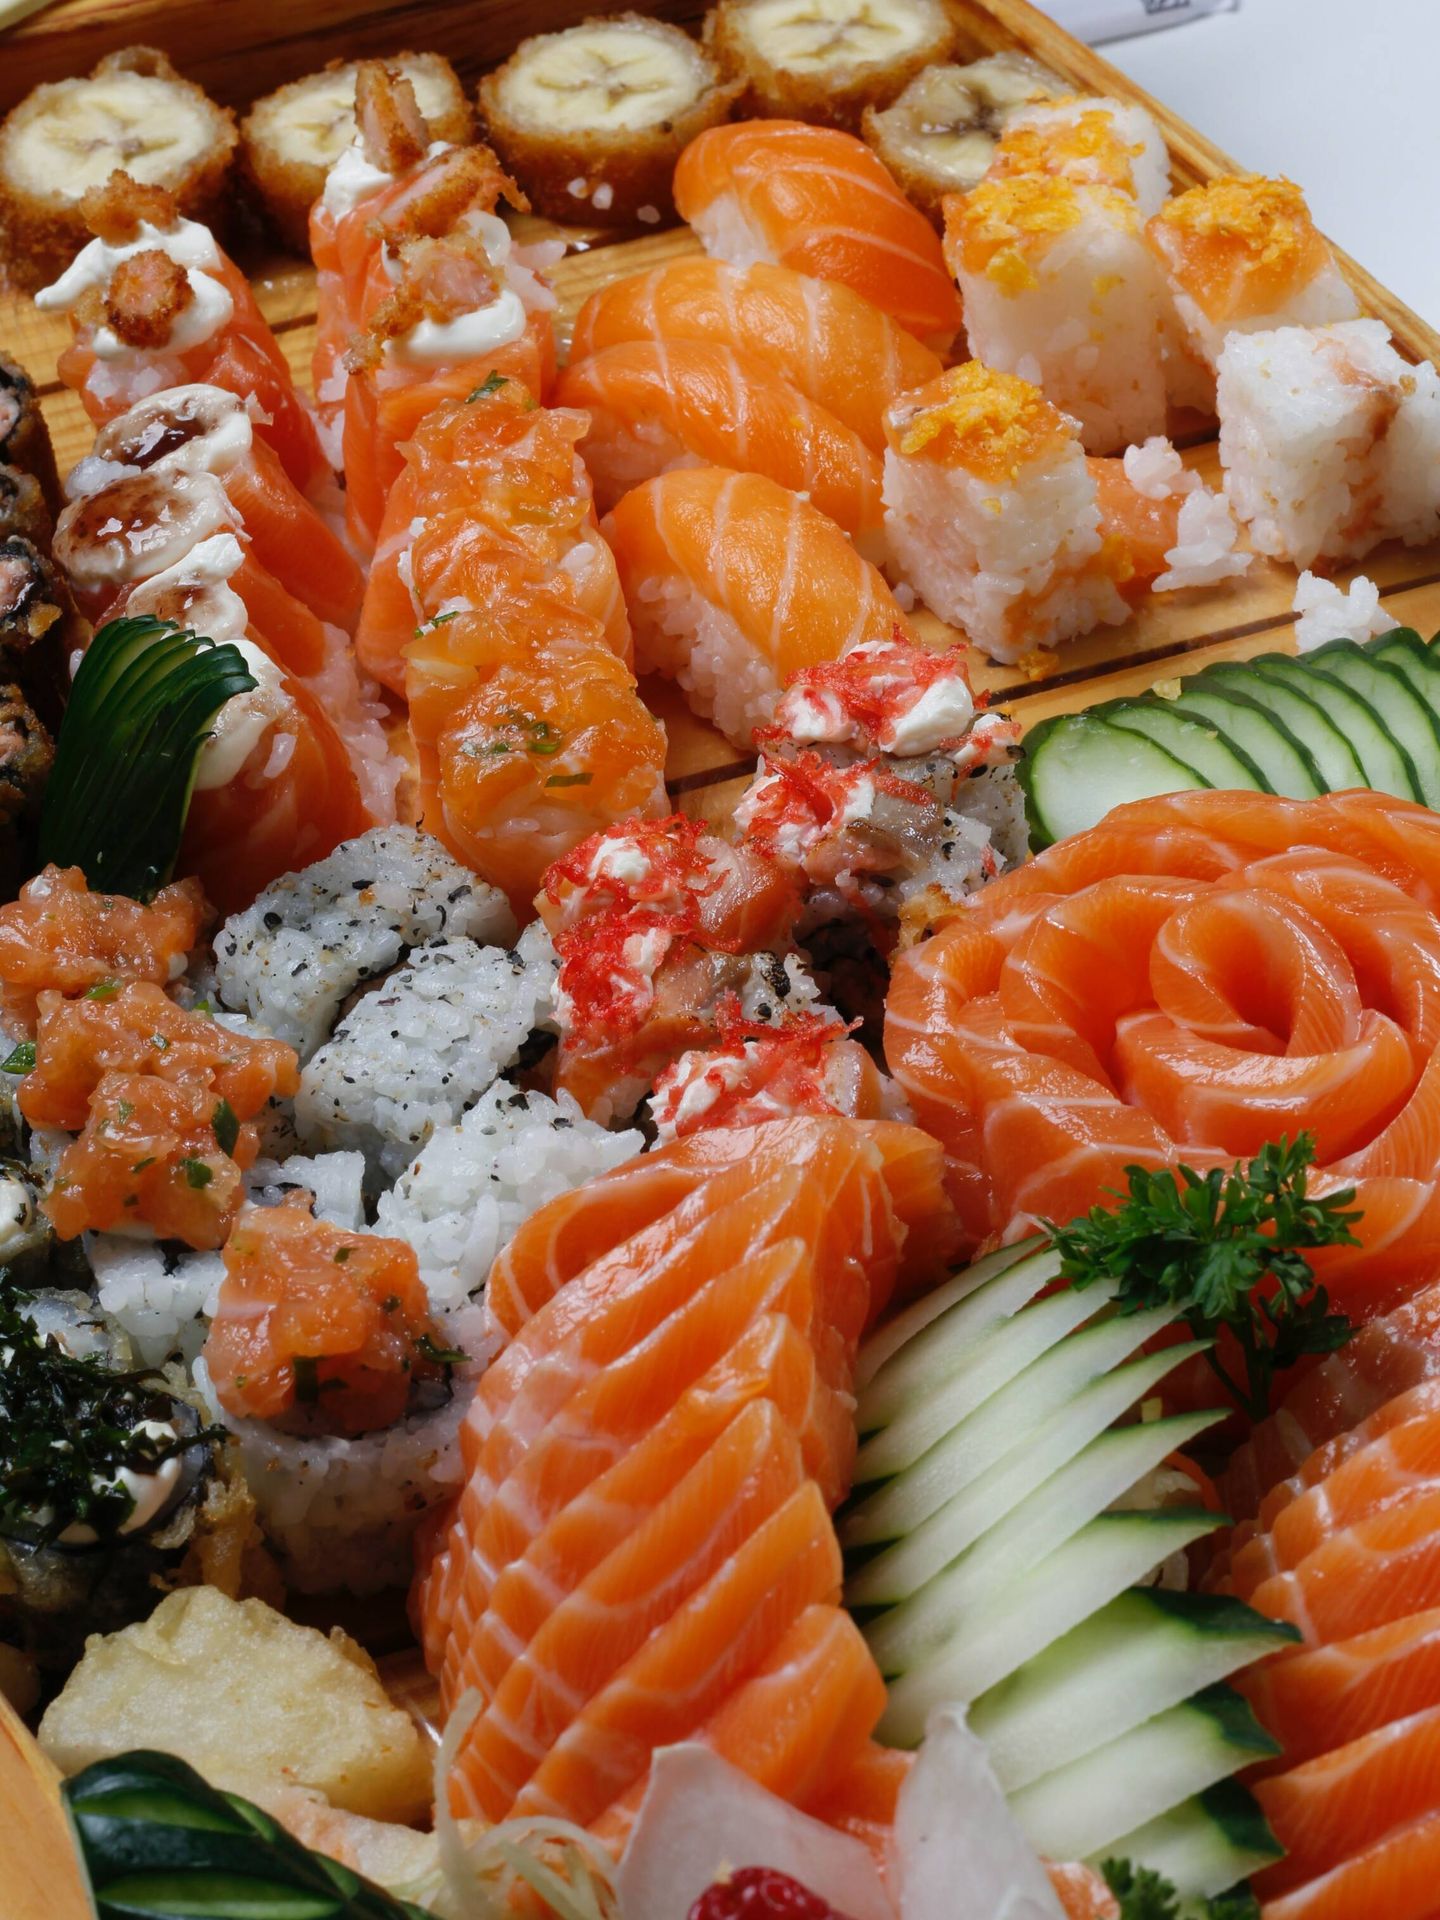 El sashimi es una buena opción alimenticia para combatir la resaca. (Unsplash/Giovanna Gomes)